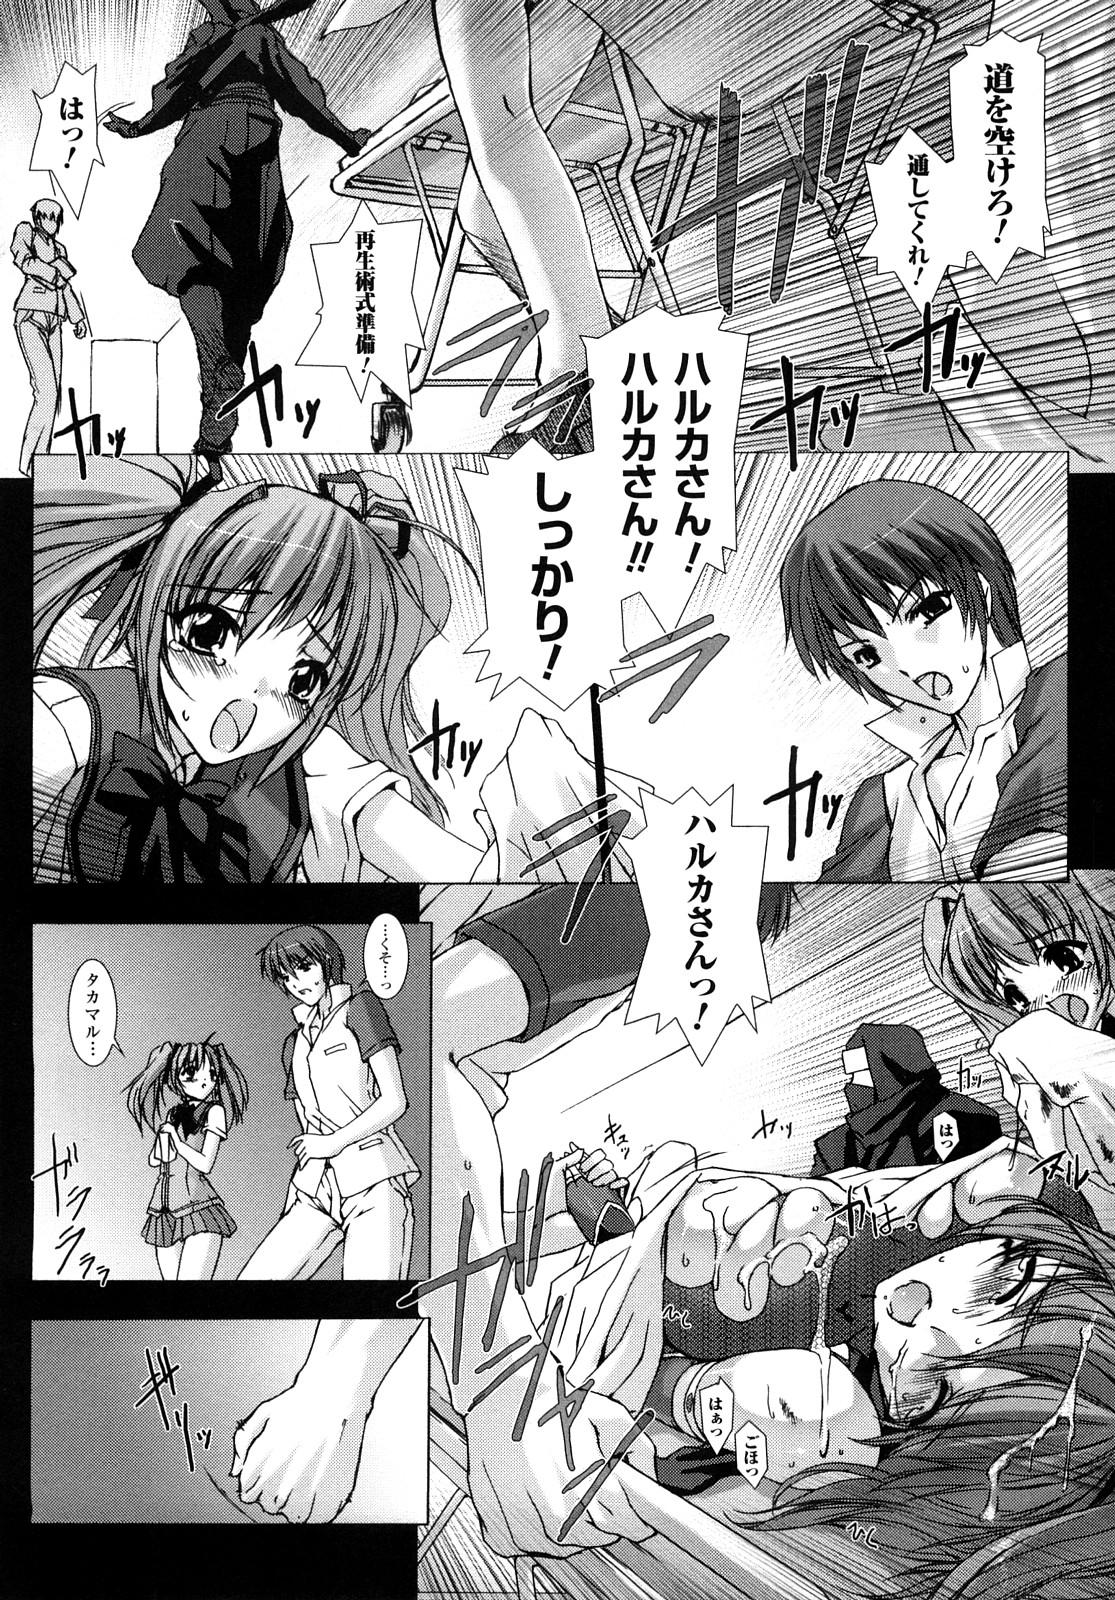 Raw Choukousennin Haruka: Yaiba no Maki - Beat blades haruka Natural Boobs - Page 10